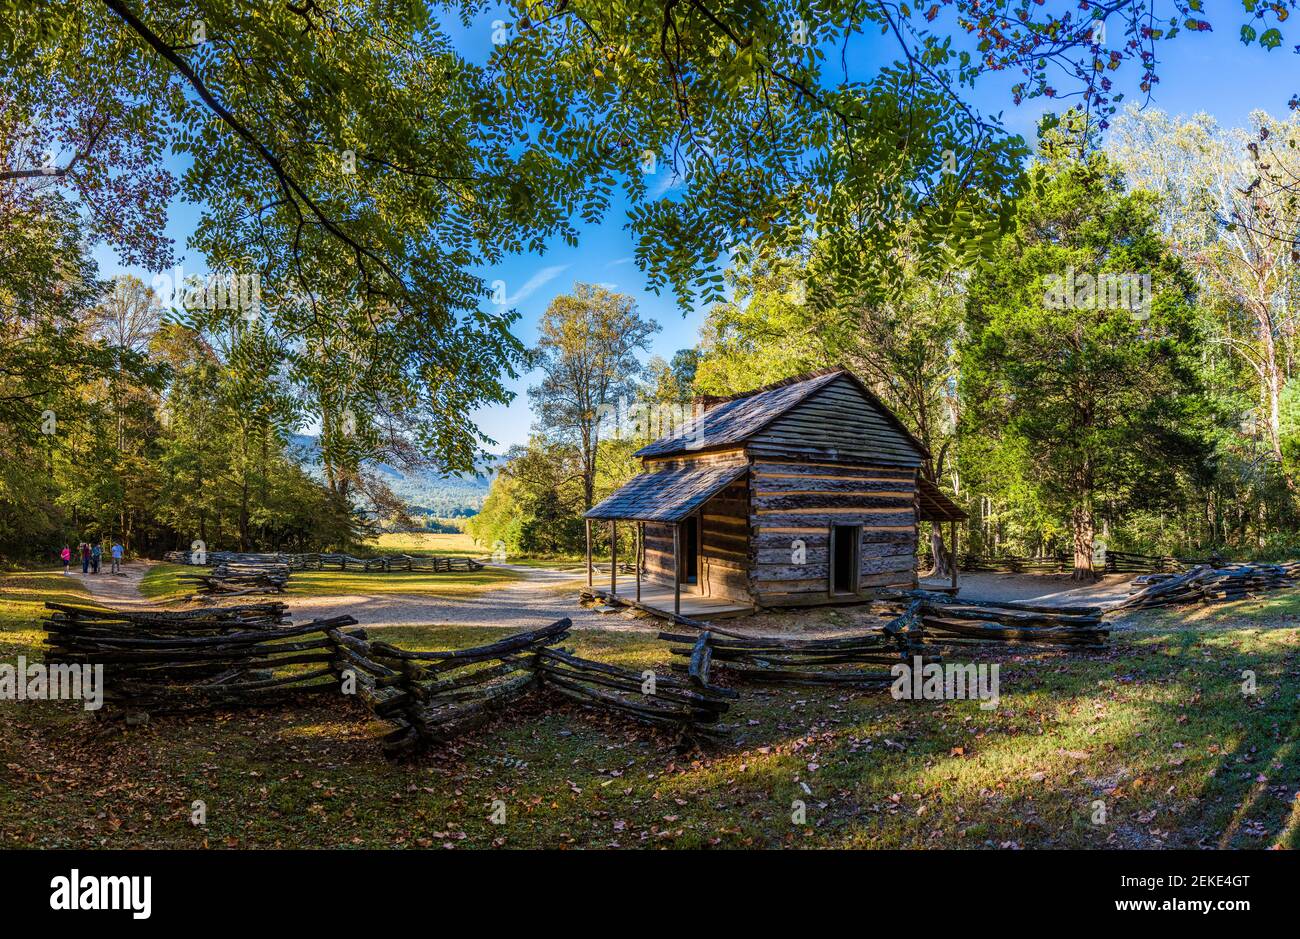 Cabaña de madera en el bosque, John Oliver Place, Cades Cove, Great Smoky Mountains National Park, Tennessee, Estados Unidos Foto de stock